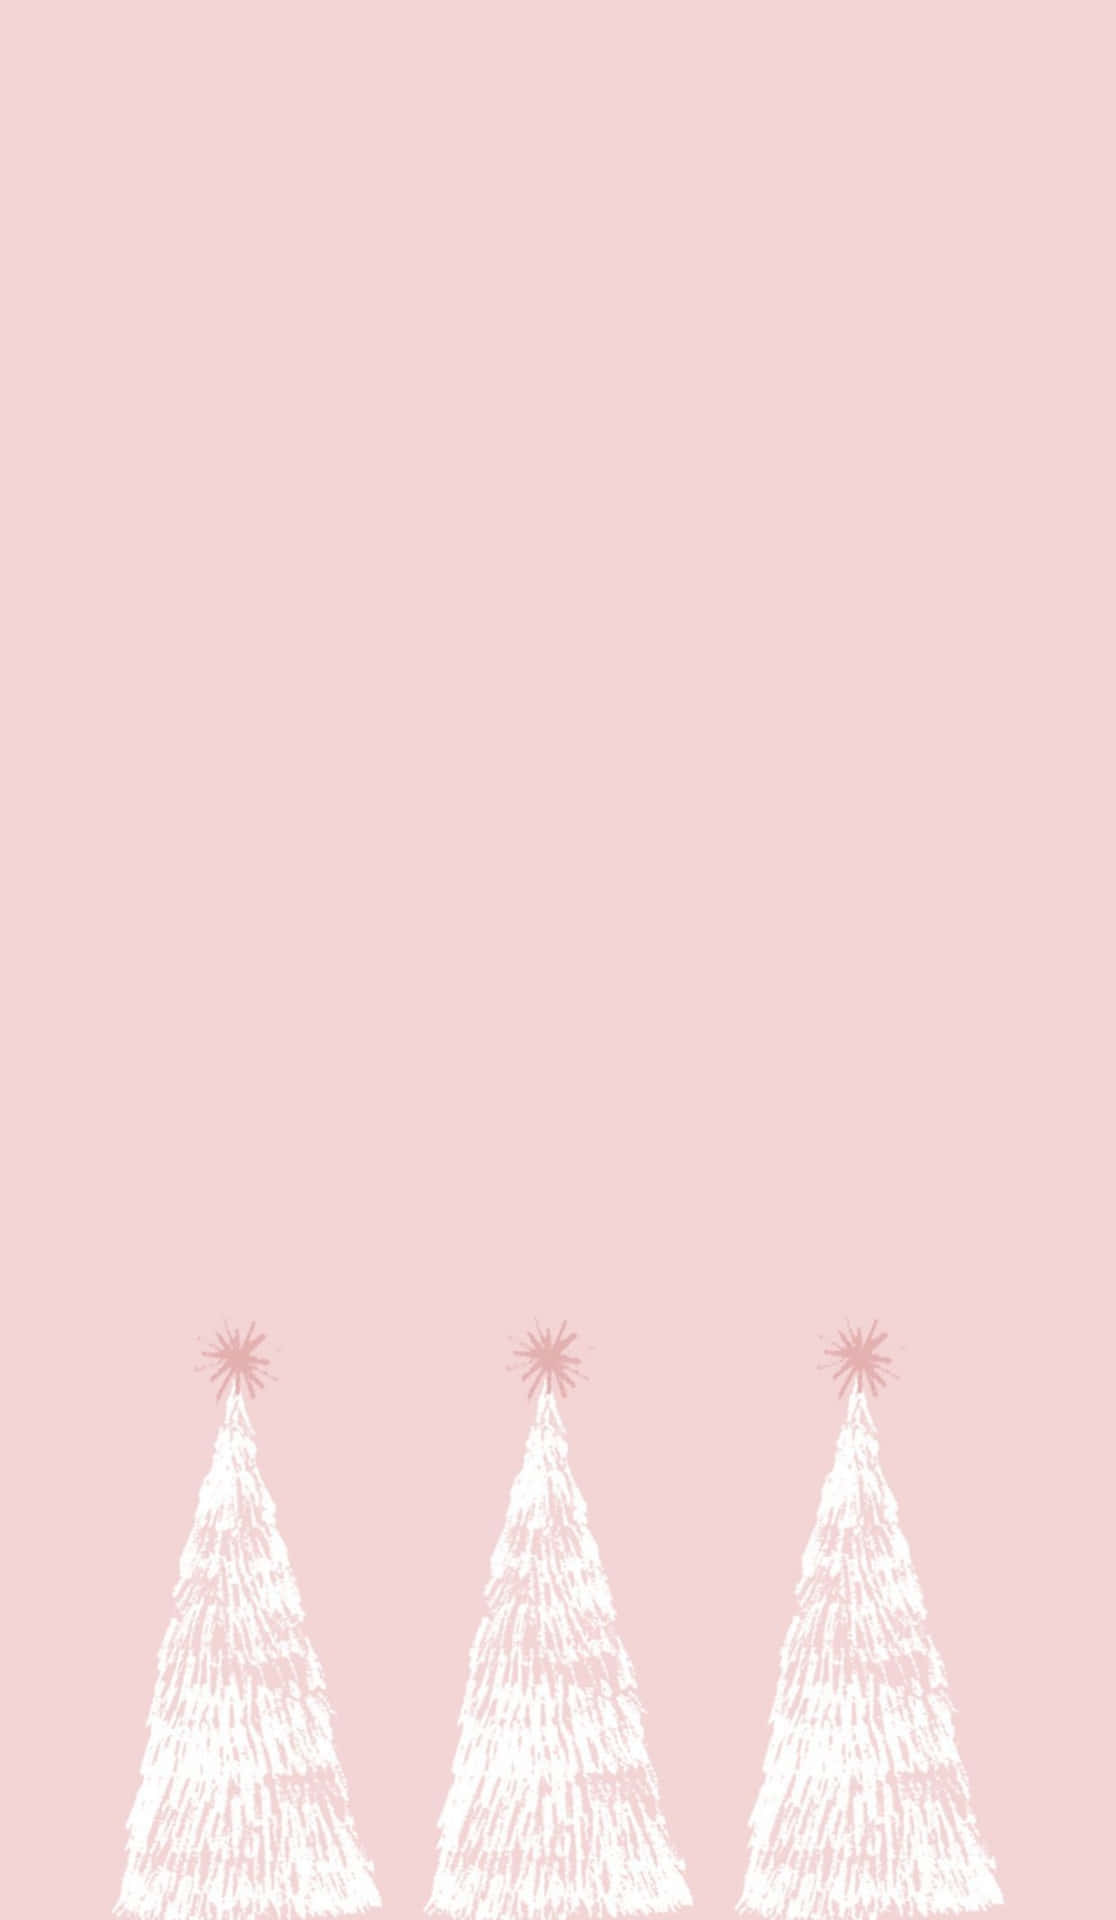 Fejr jul med en blød, pink berøring! Wallpaper